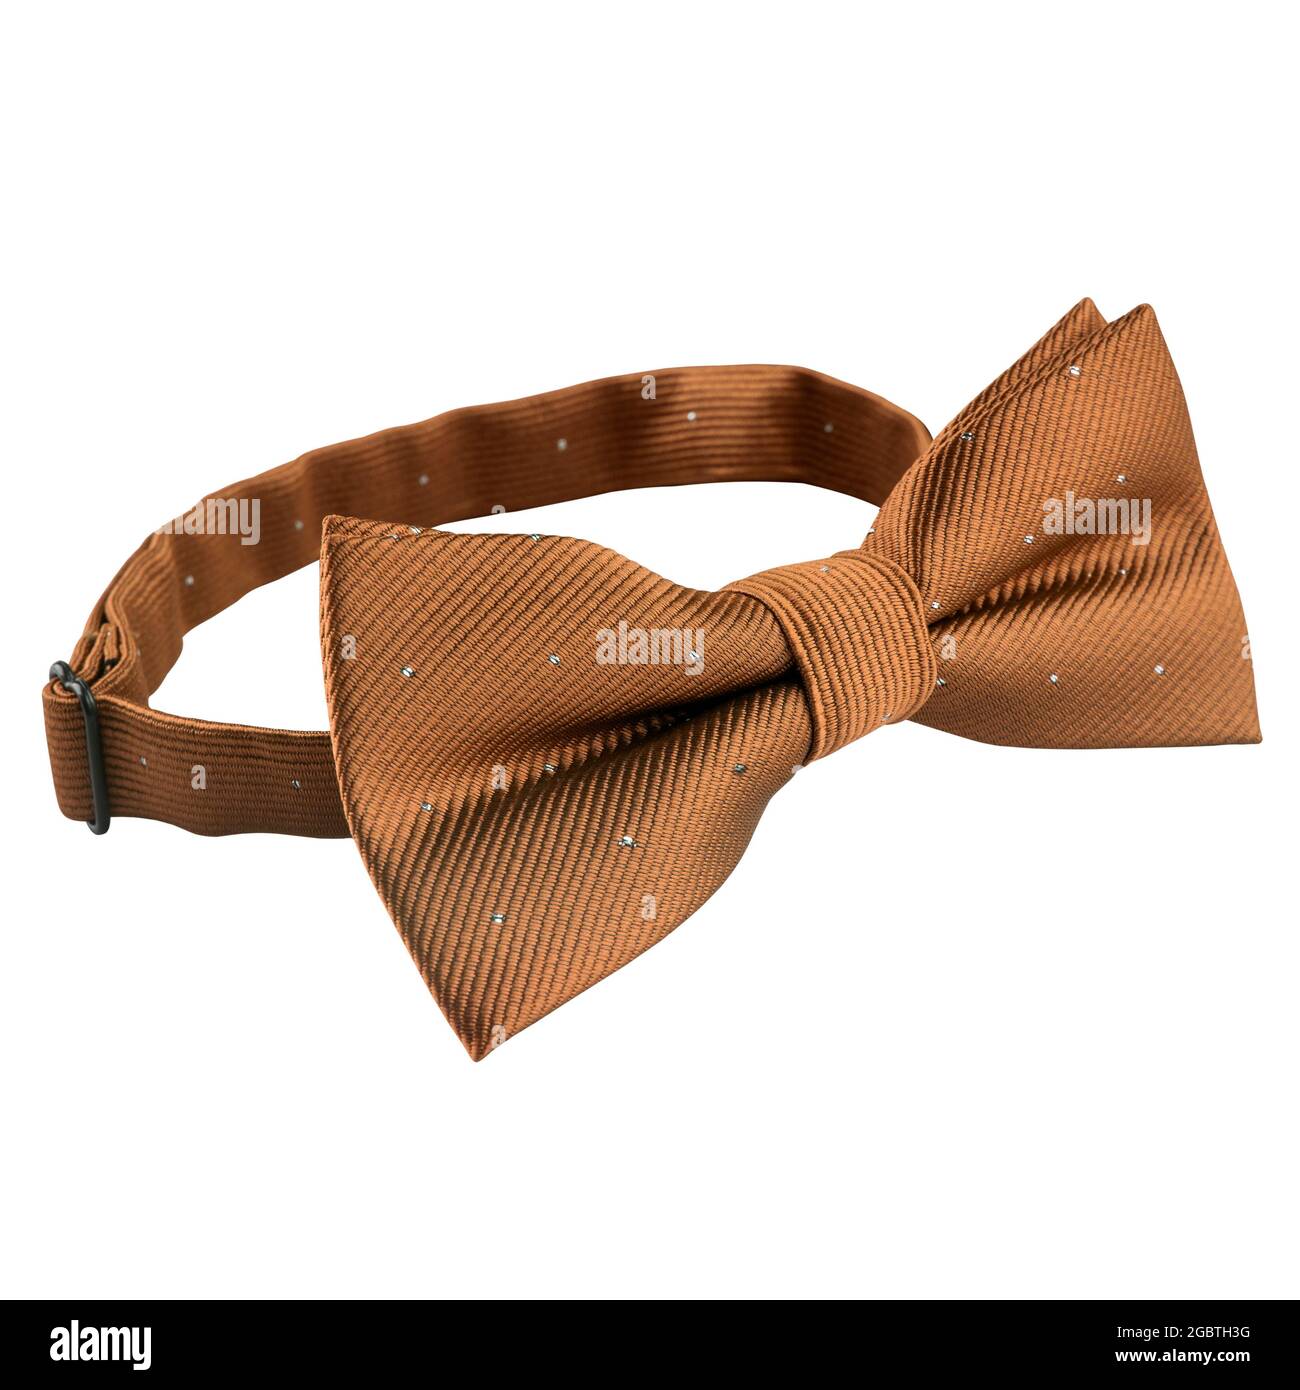 Cravate marron clair isolée sur fond blanc. Accessoire pour hommes pour la cérémonie de mariage Banque D'Images